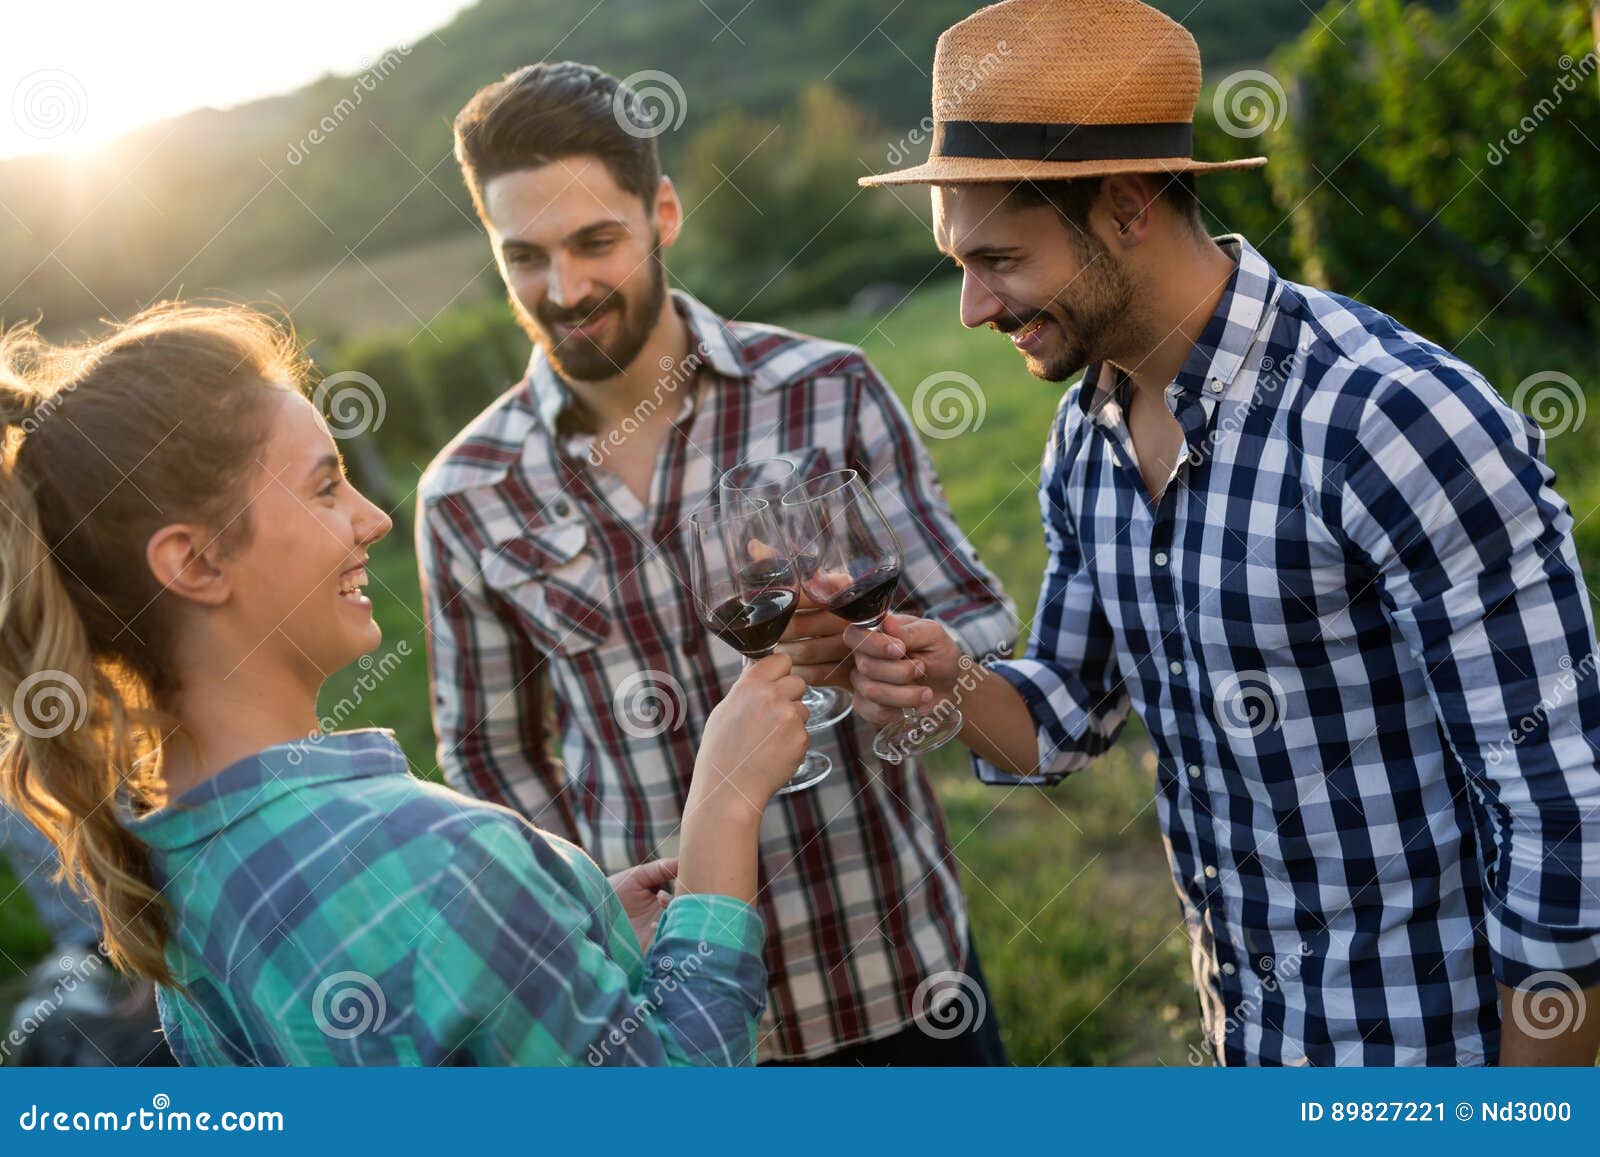 wine grower and people in vineyard